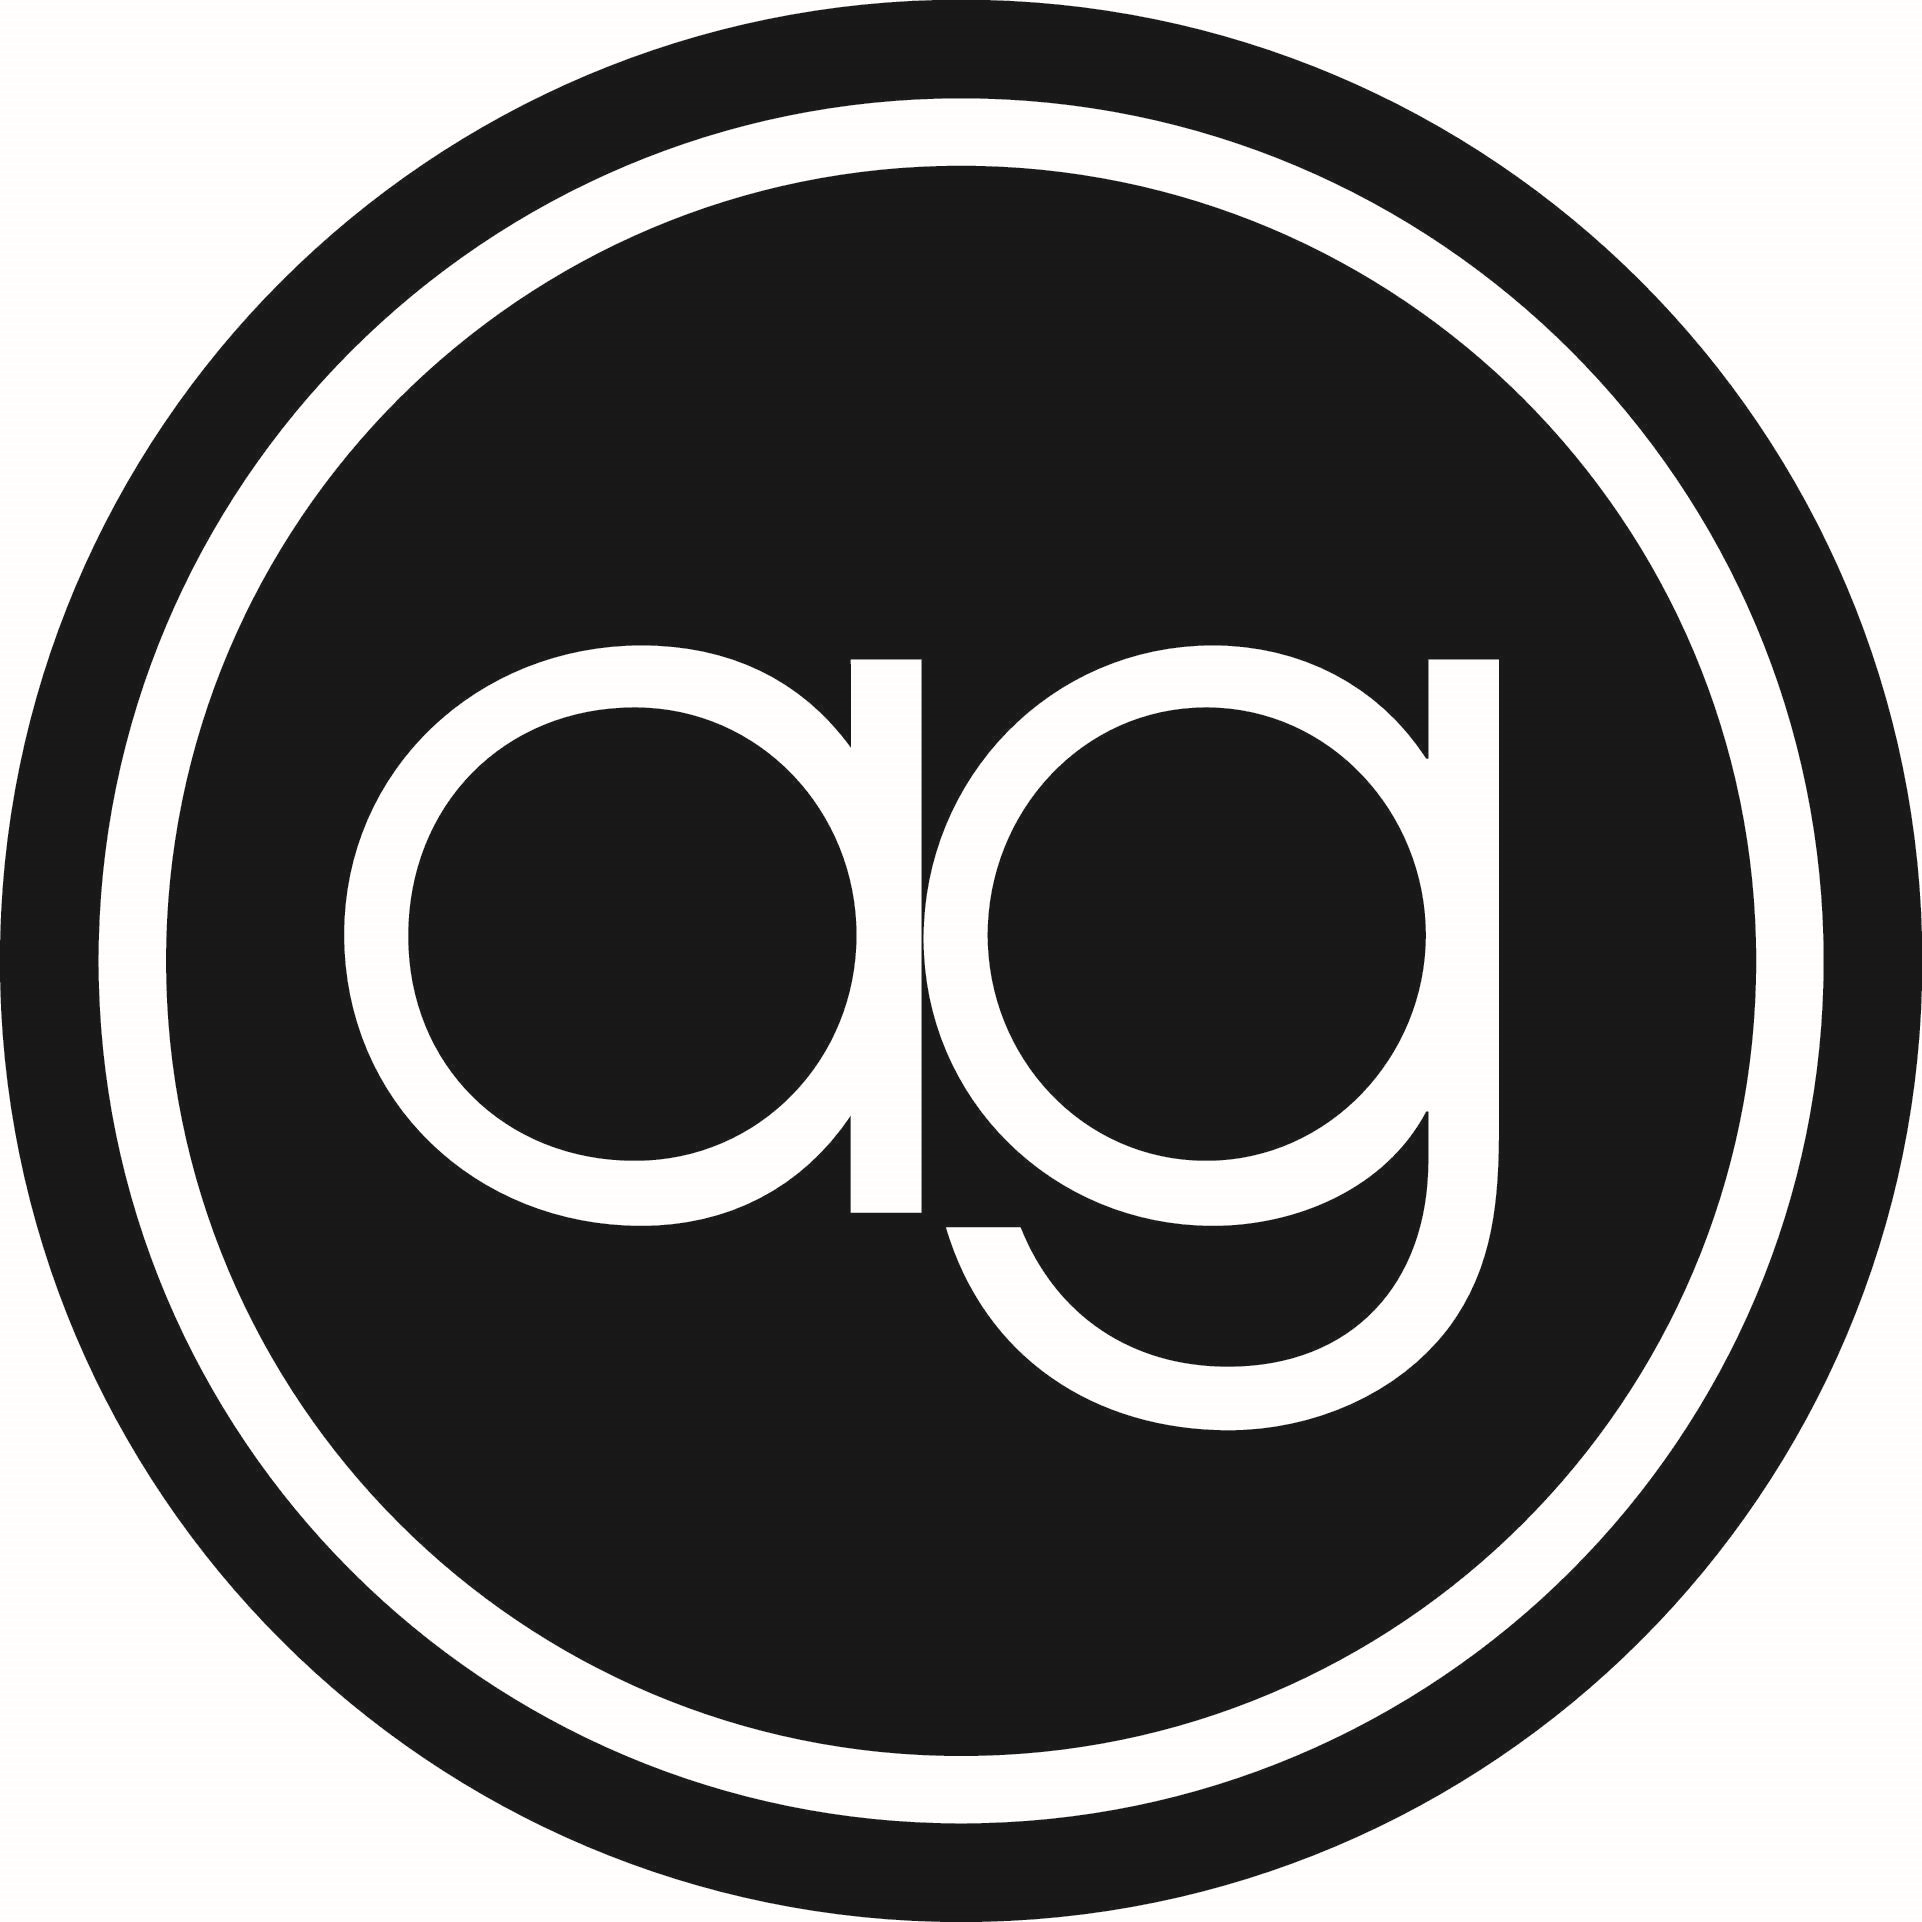 AvantGuard Monitoring Centers Company Logo